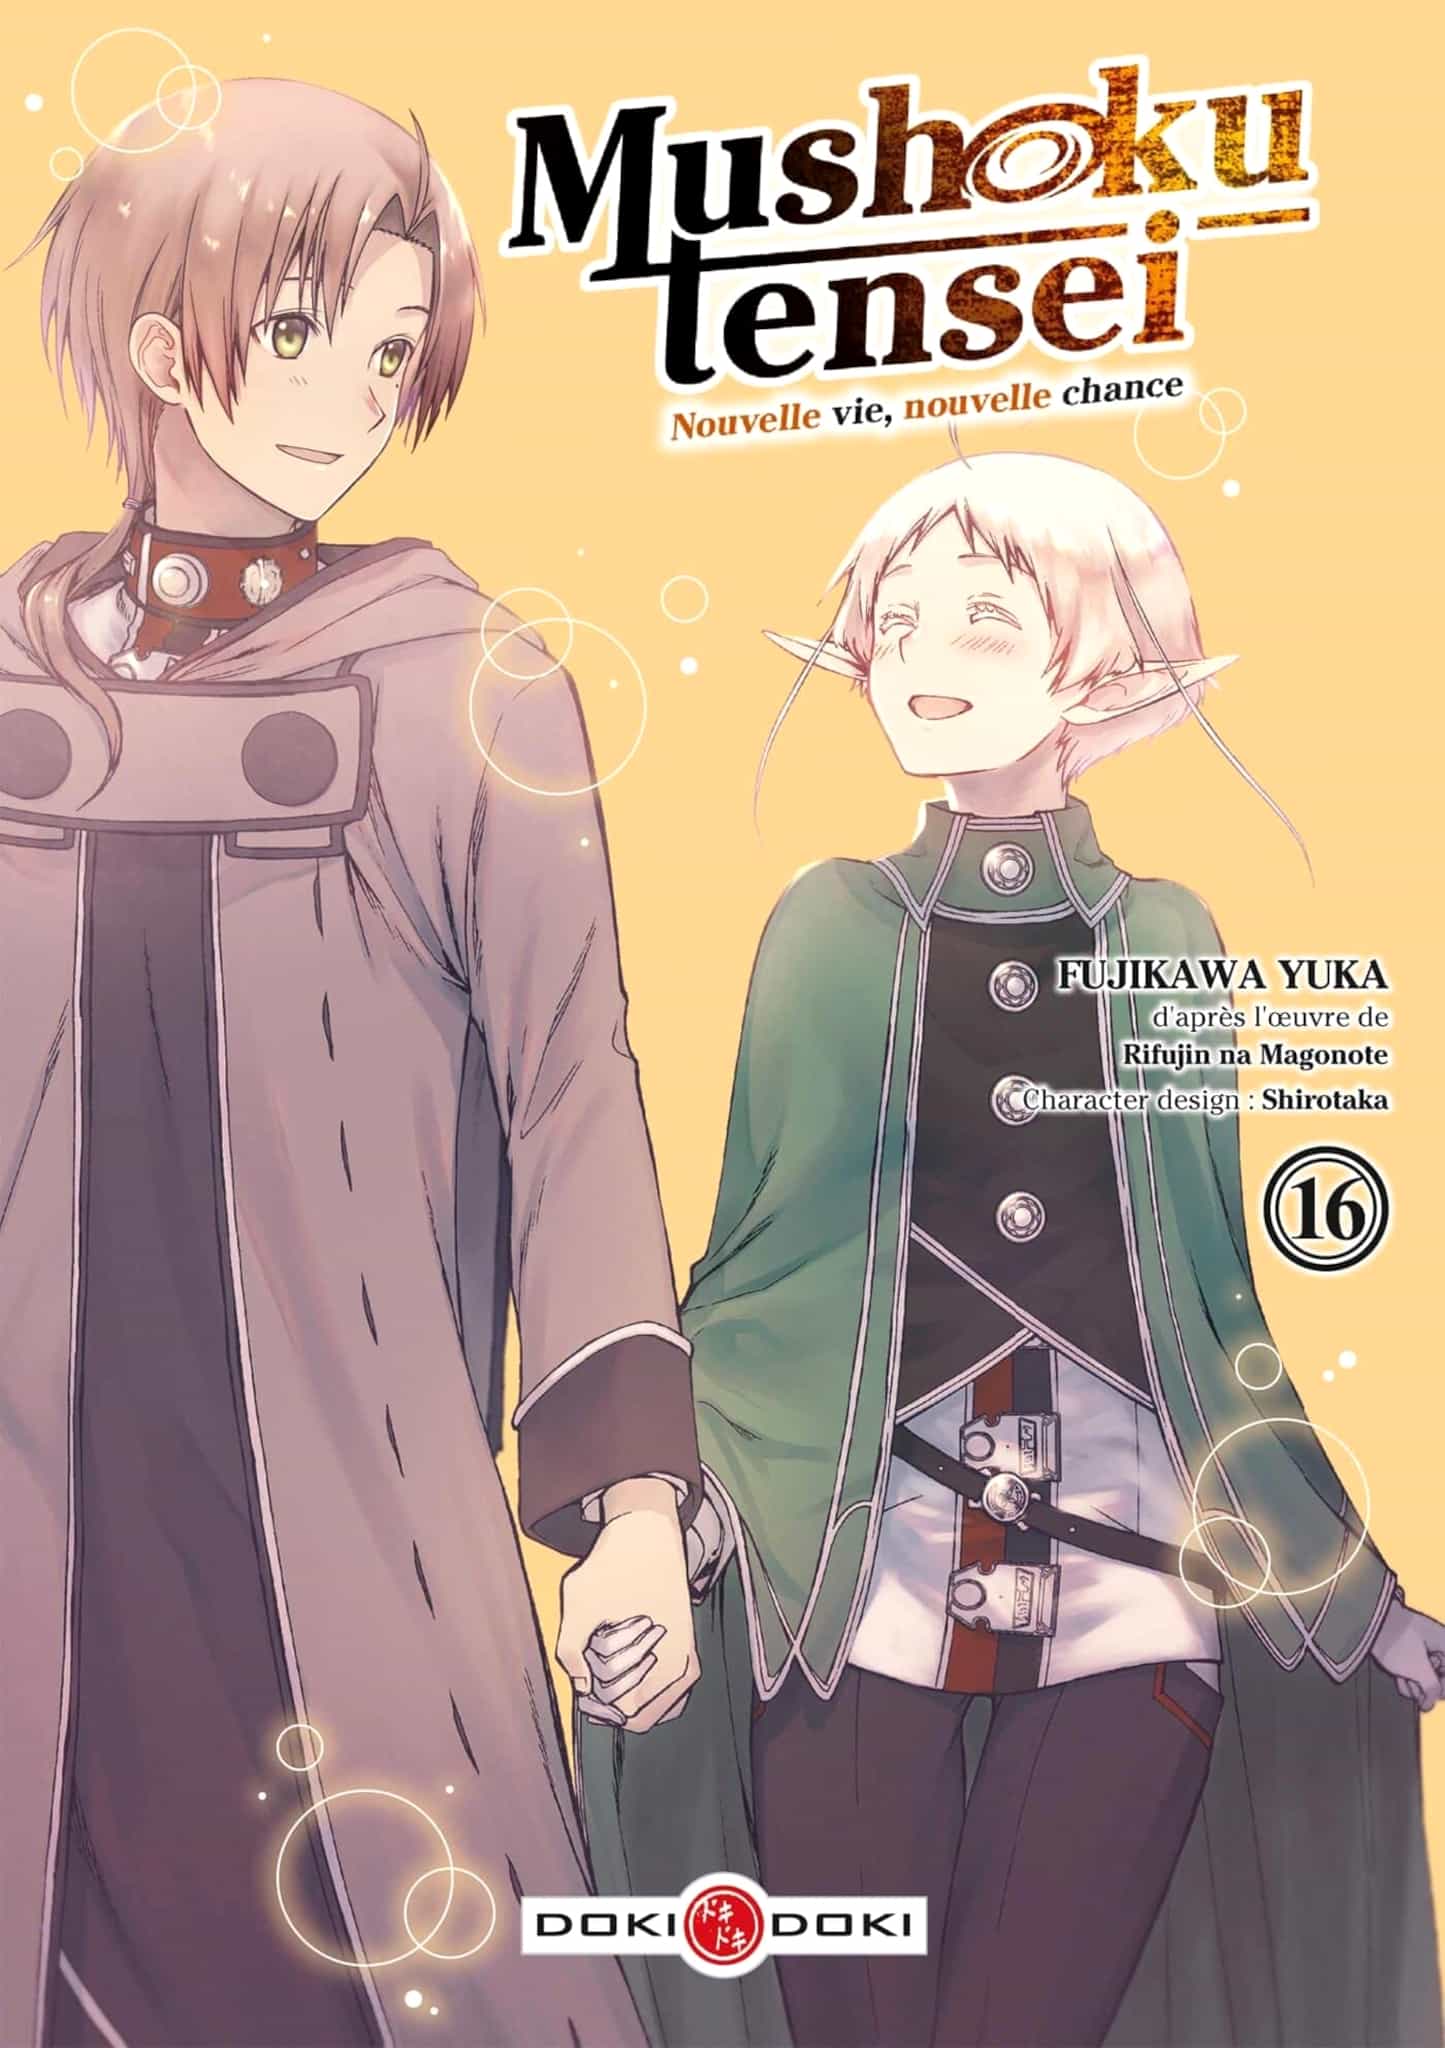 Tome 16 du manga Mushoku Tensei